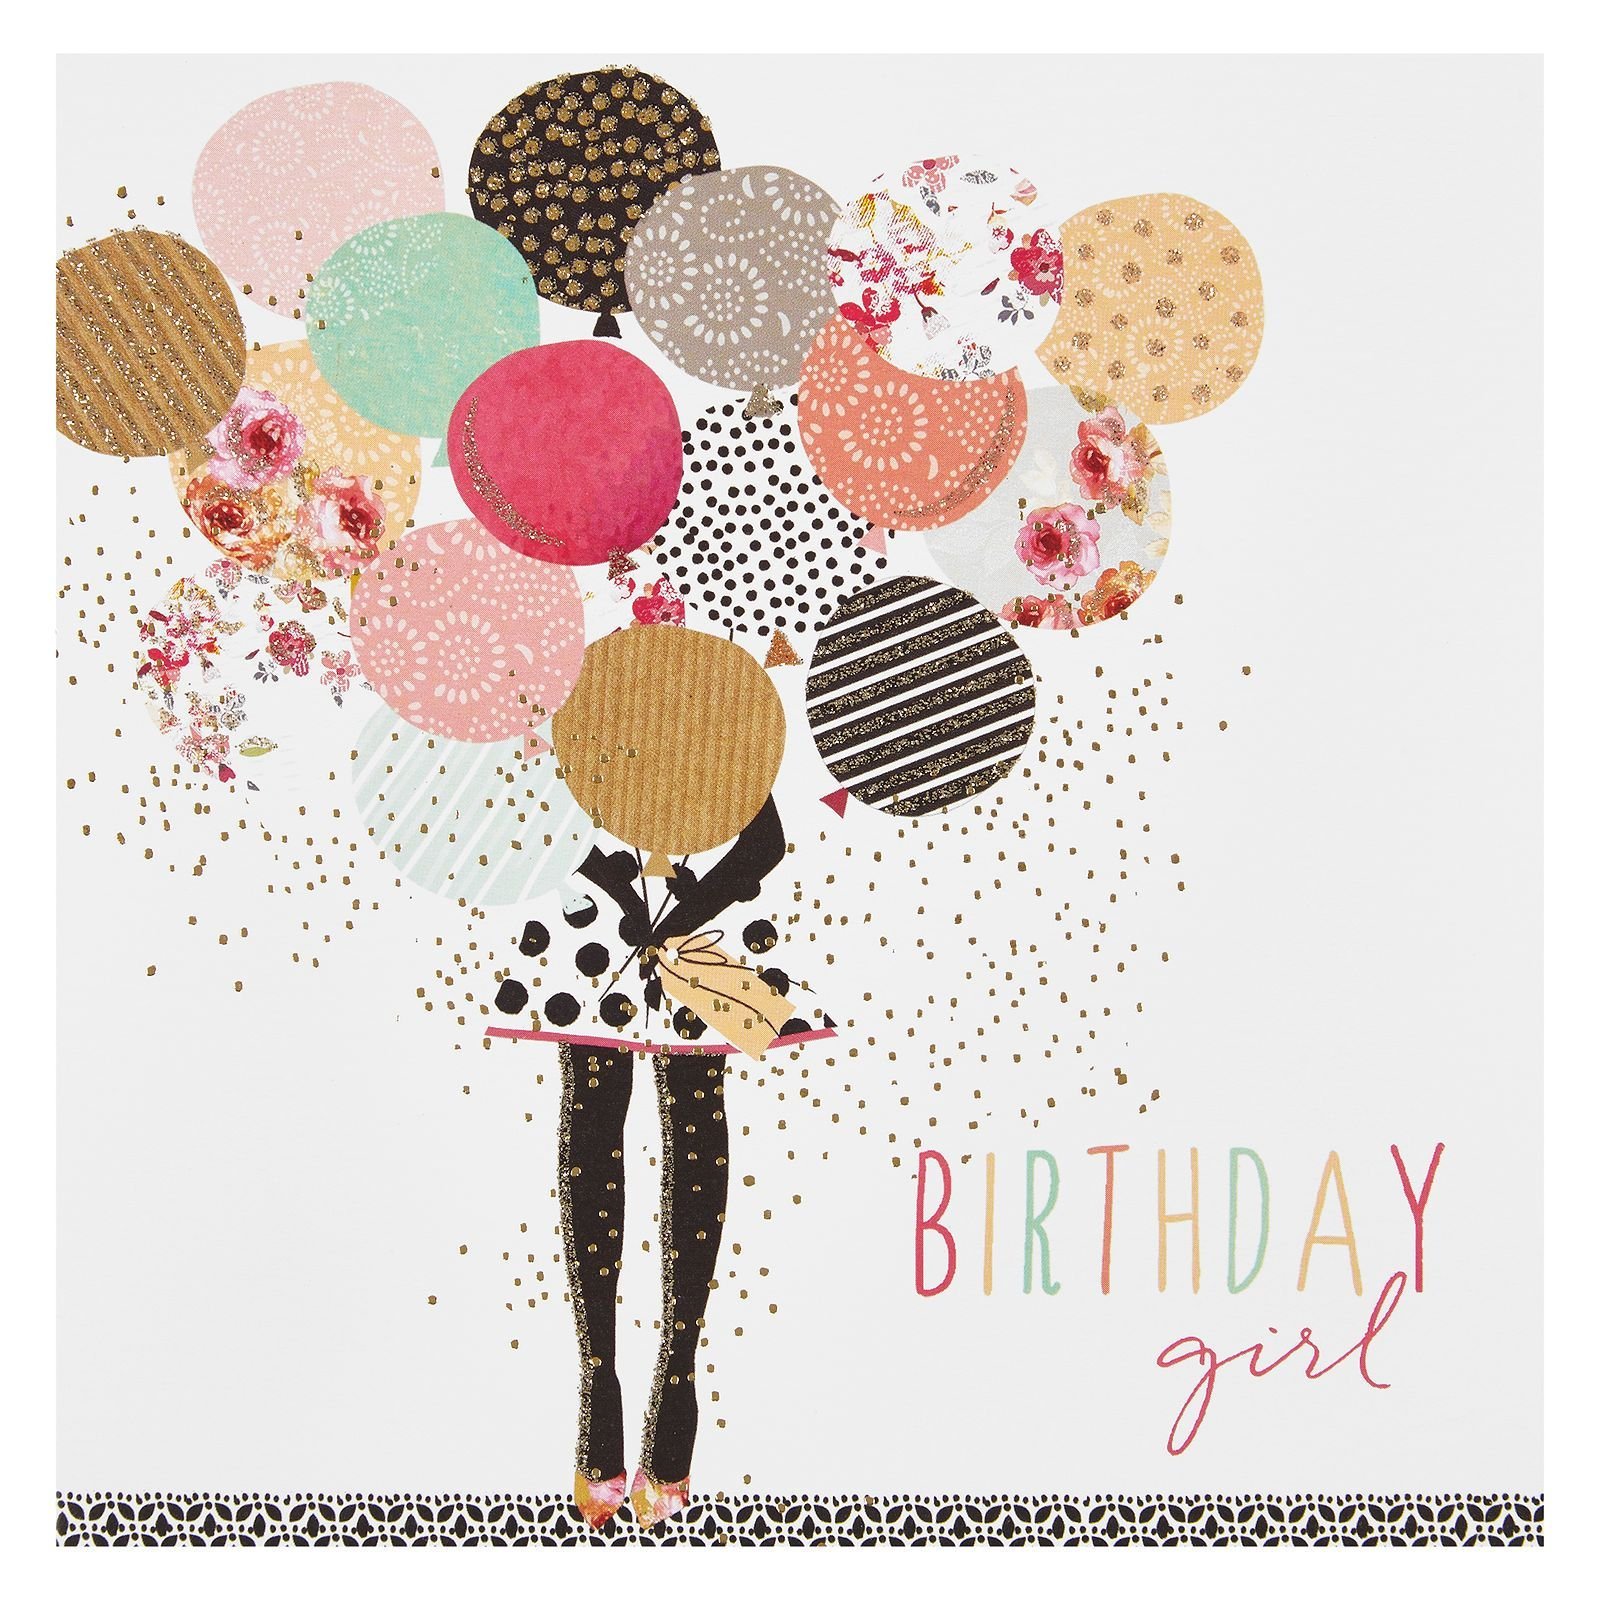 С днем рождения стильная открытка для женщины. Стильное поздравление с днем рождения. Стильные открытки с днем рождения. Современные открытки с днем рождения. Открытки с днём рождения девушке стильные.